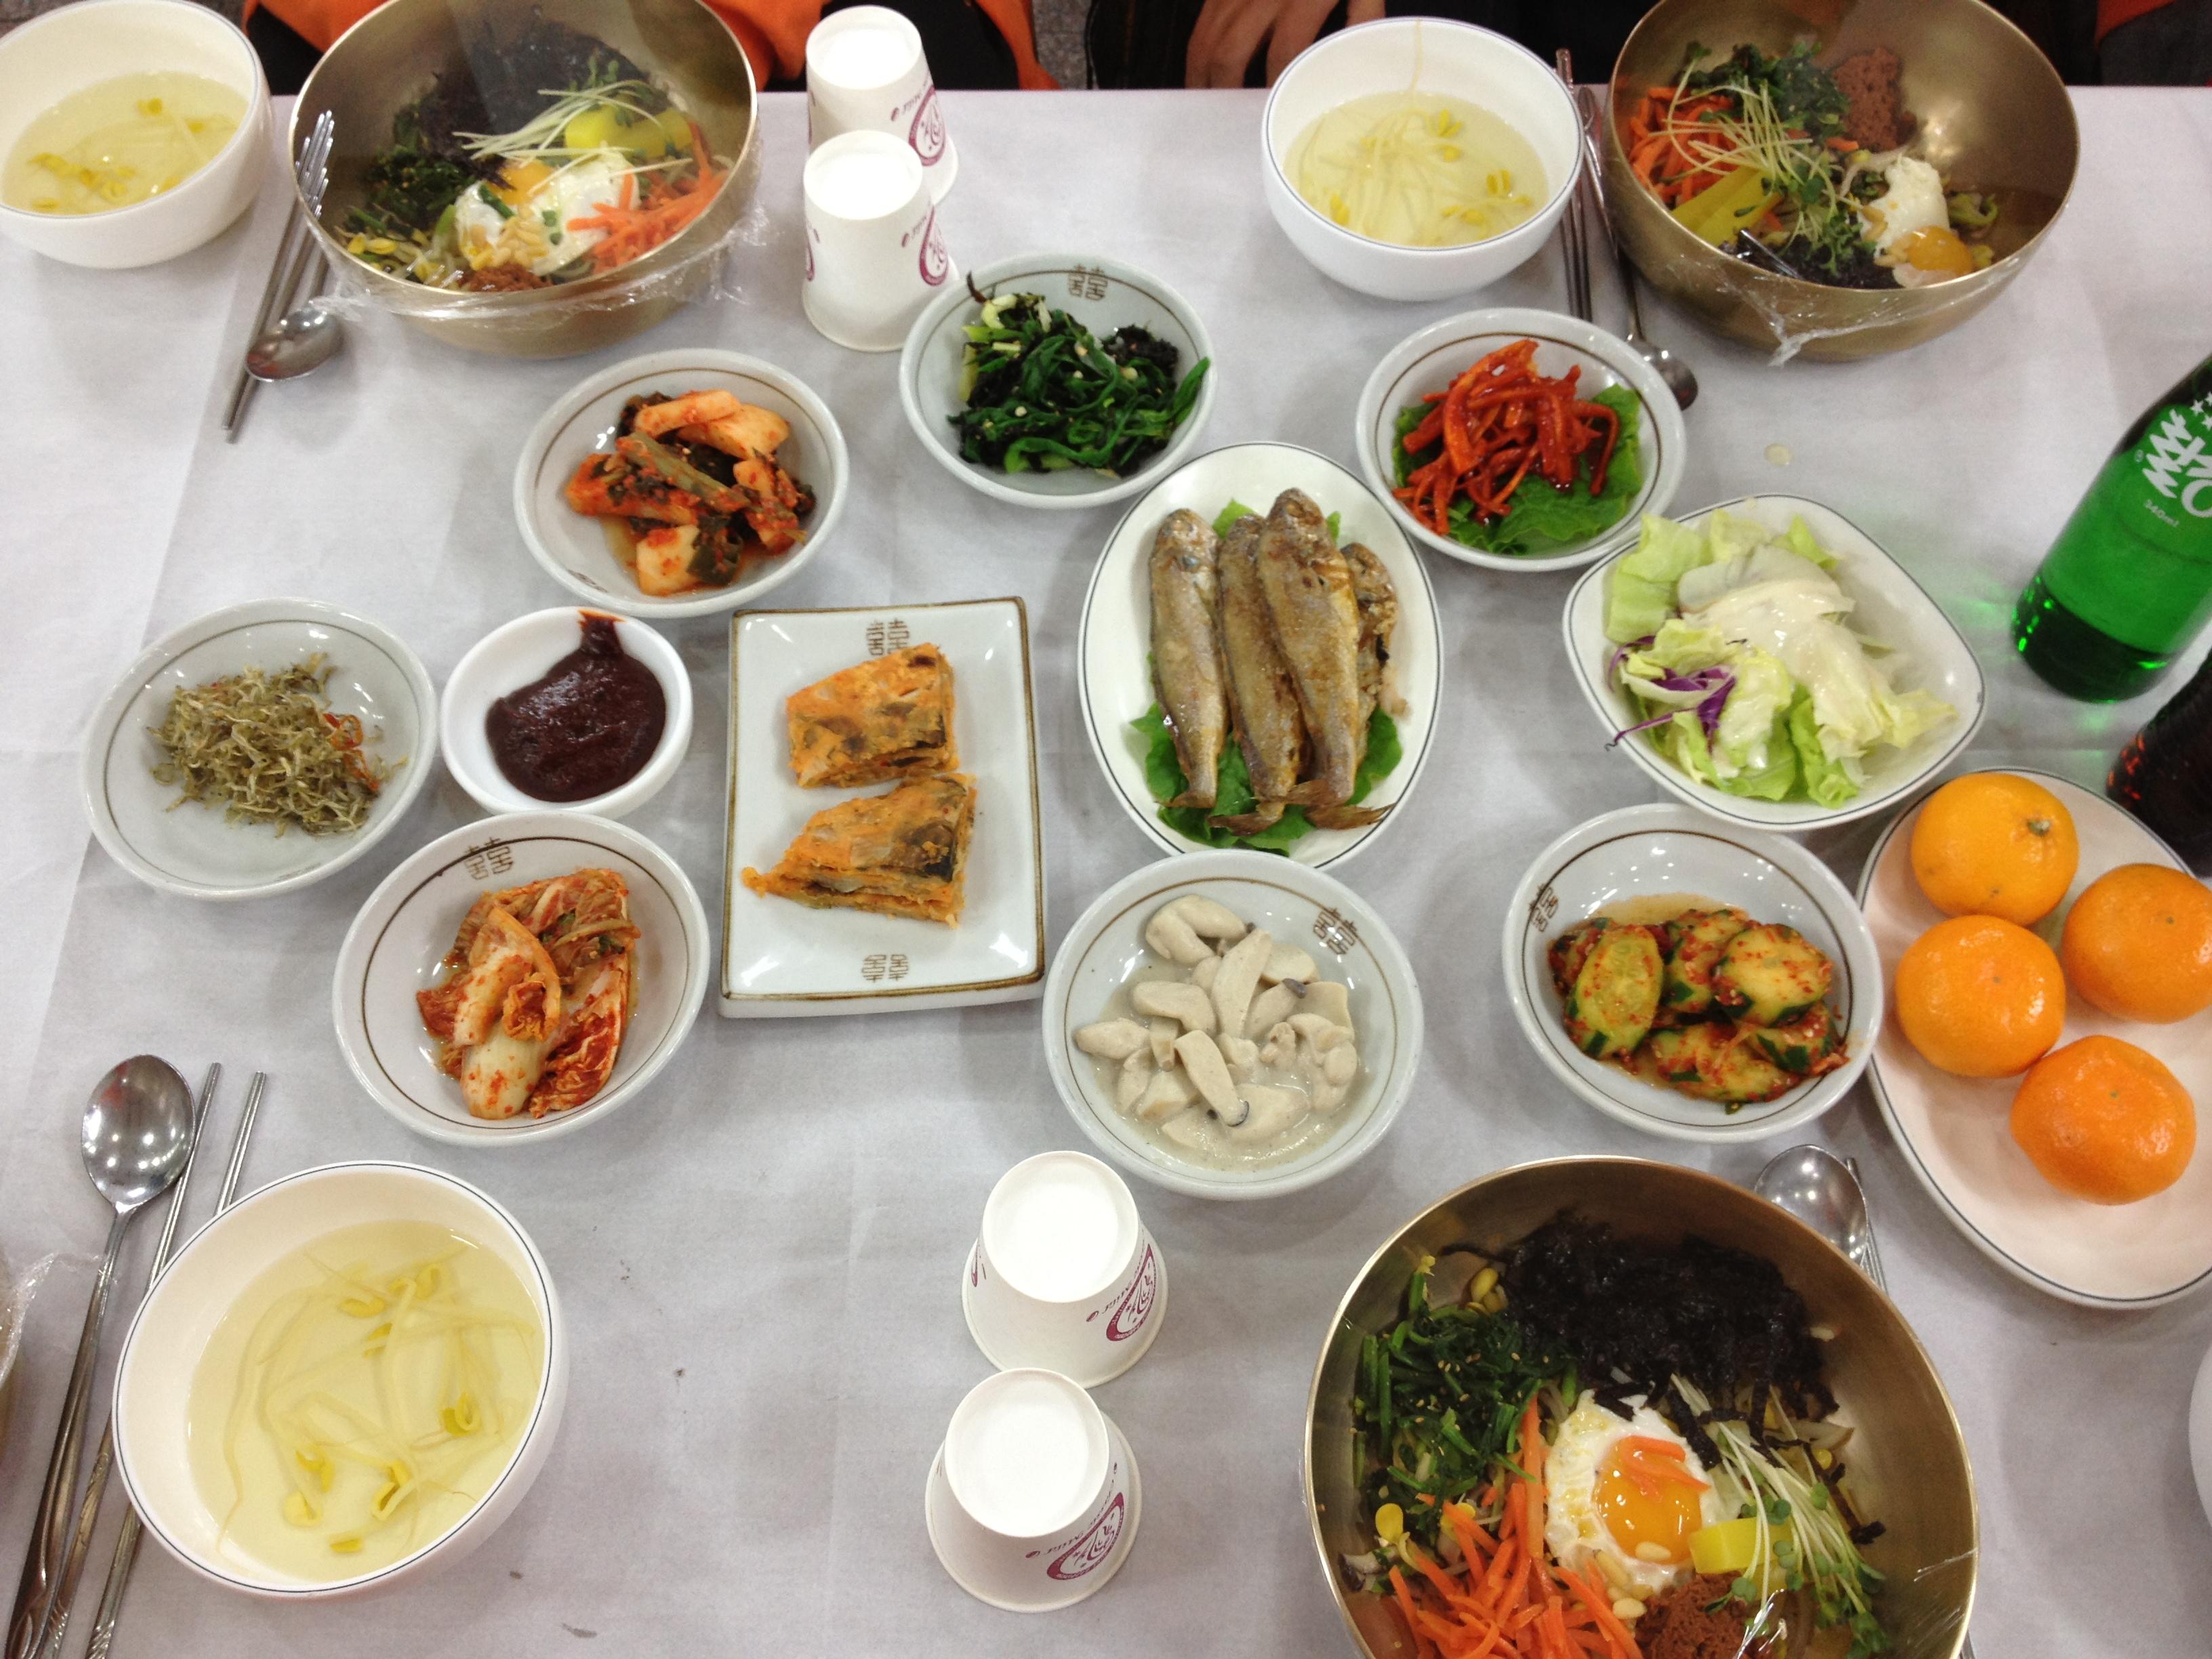 韩国美食图片大全-韩国美食高清图片下载-觅知网